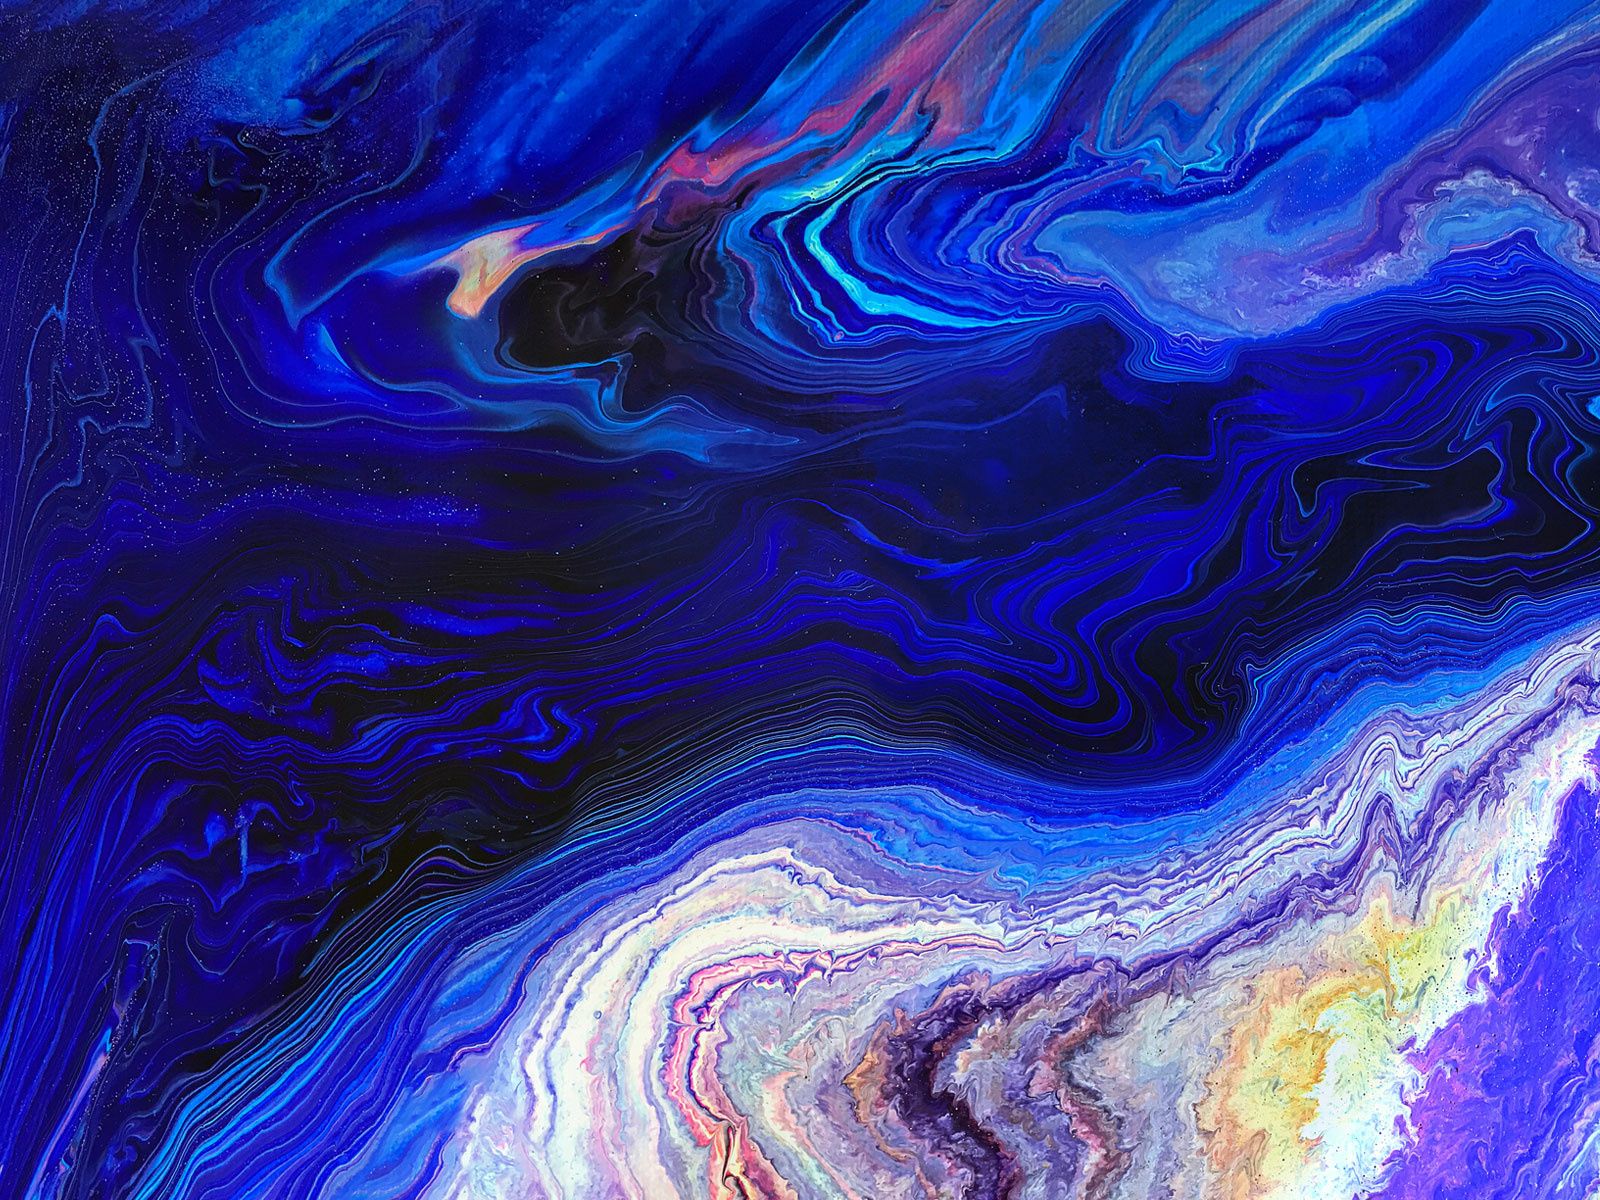 Fluid art abstract wallpaper